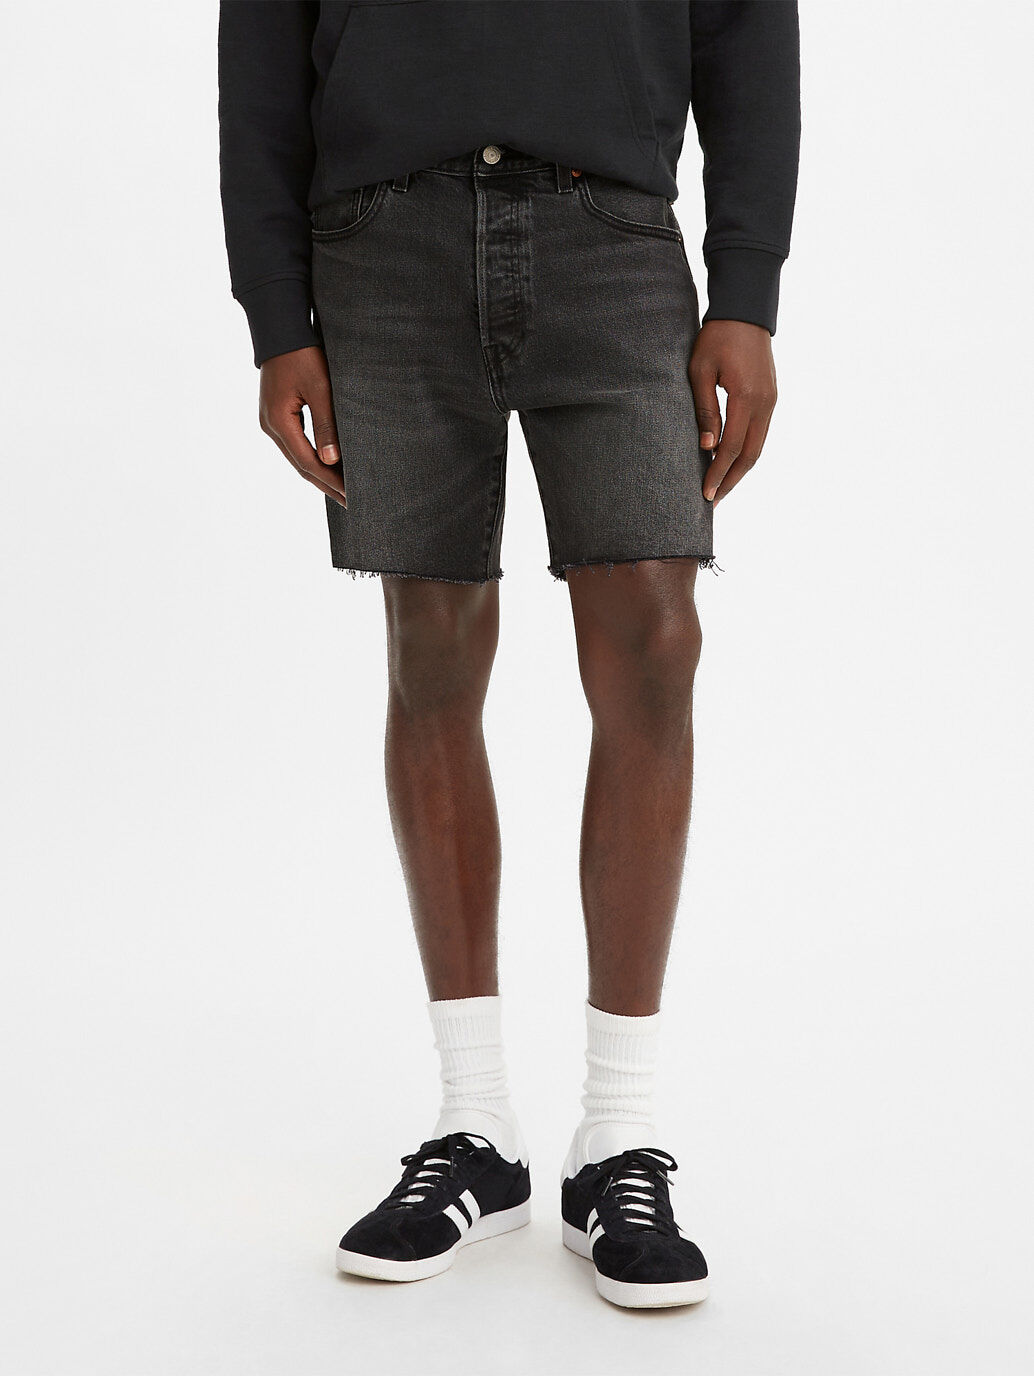 Levi's® Australia Men's Shorts - A 